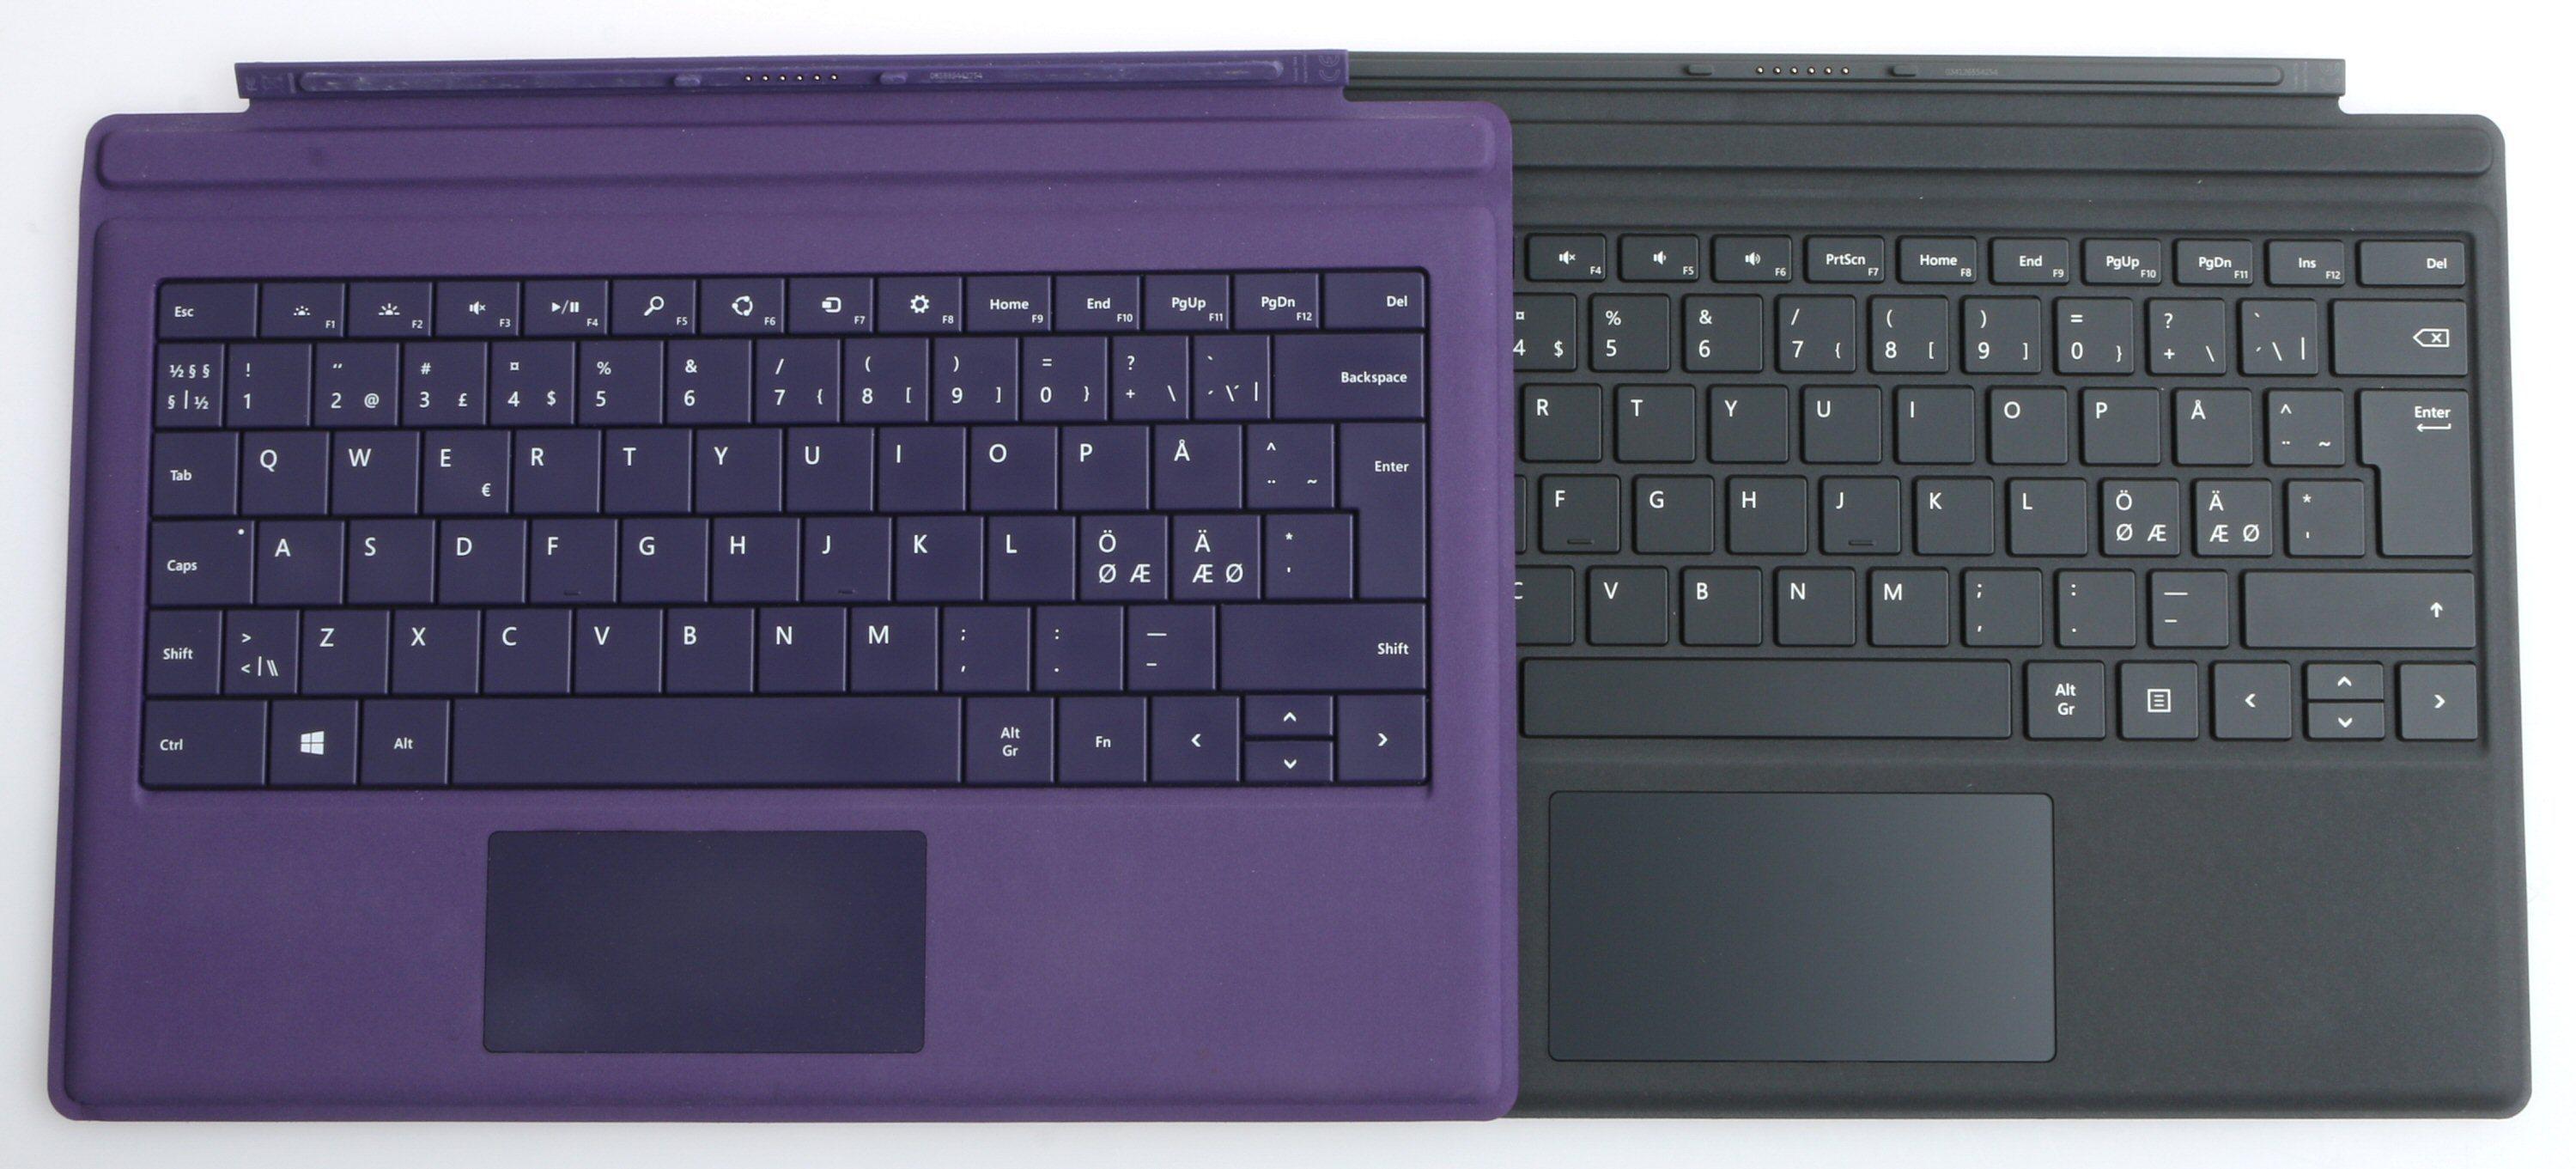 Microsoft Surface Pro 4 Type Cover til høyre, den opprinnelige for Pro 3 til venstre. Foto: Vegar Jansen, Tek.no